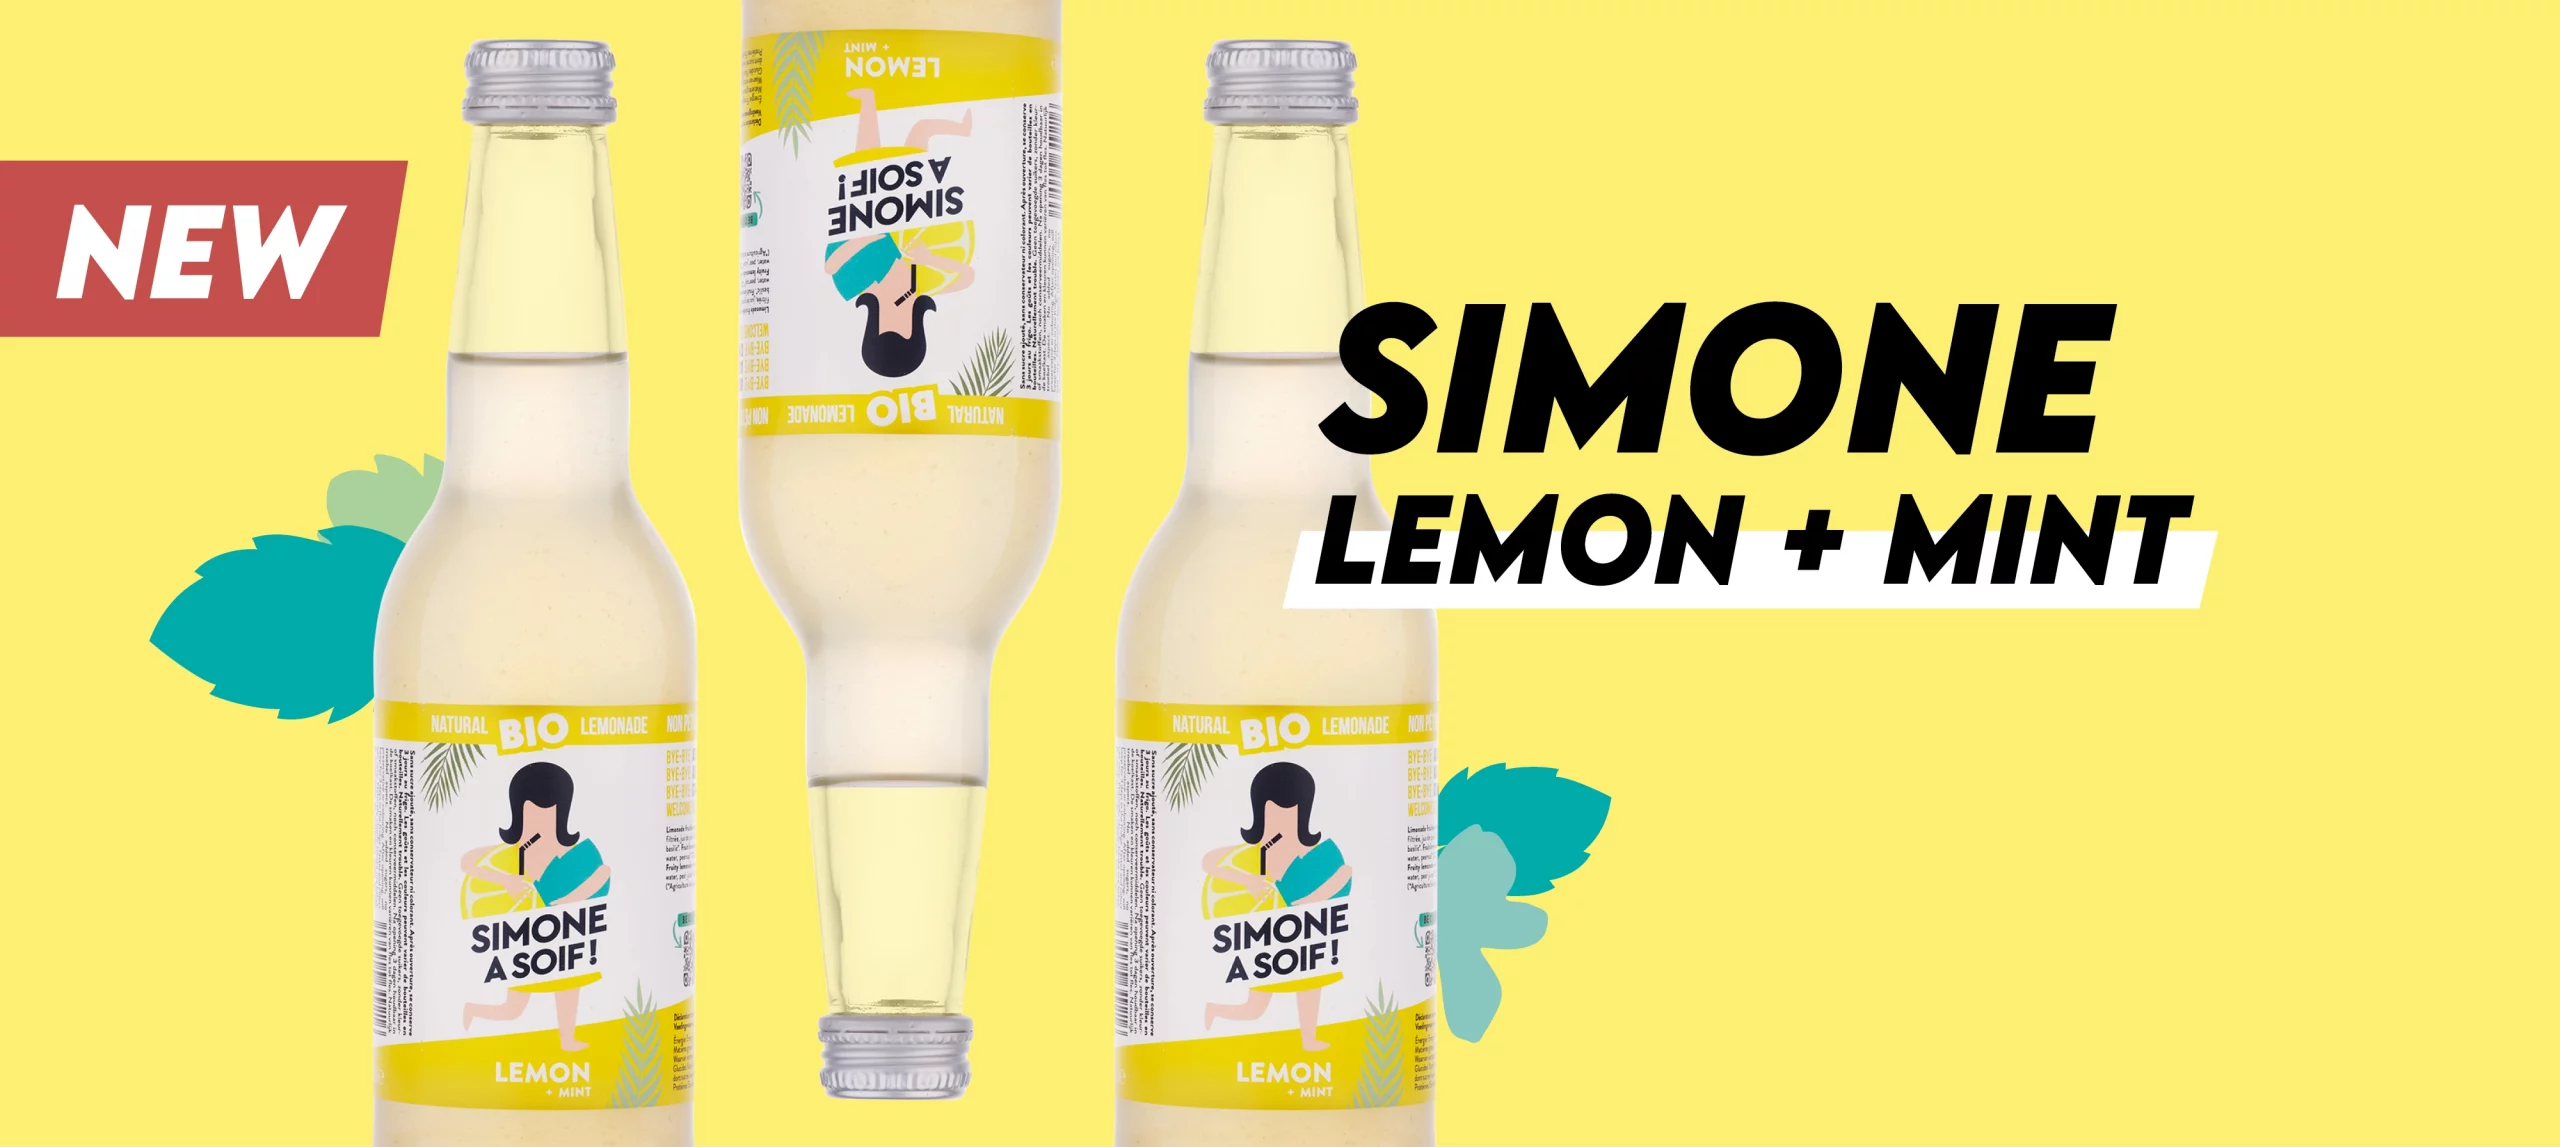 Simone a Soif! the new lemon + mint